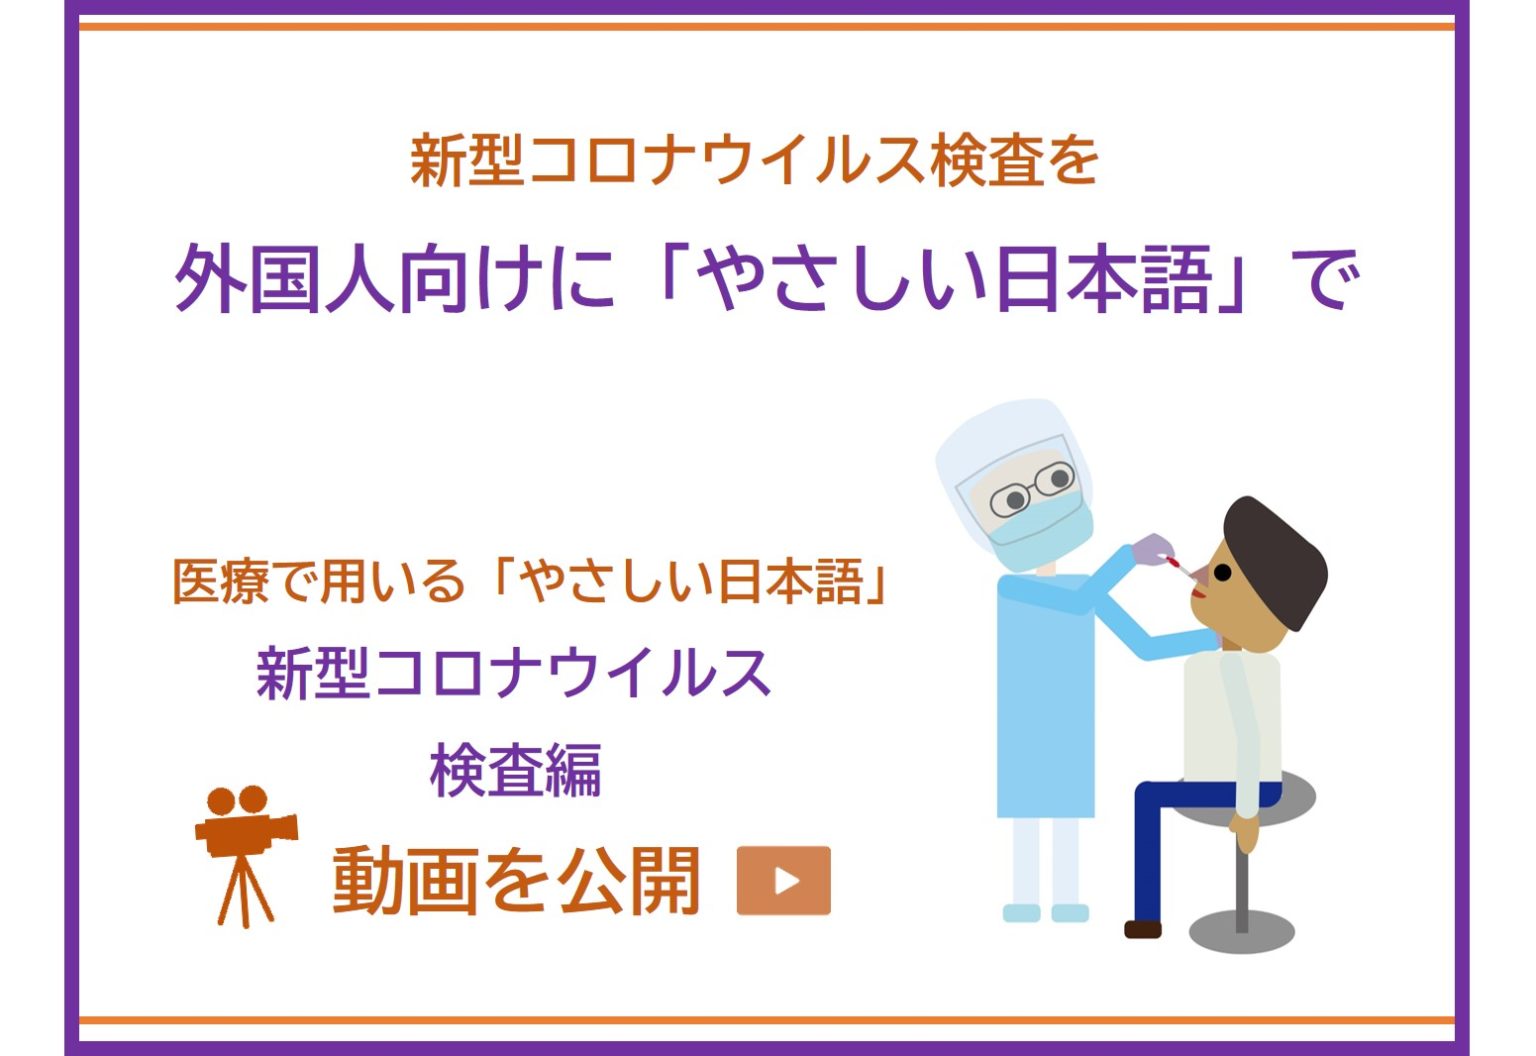 医療現場でも役立つ「やさしい日本語」